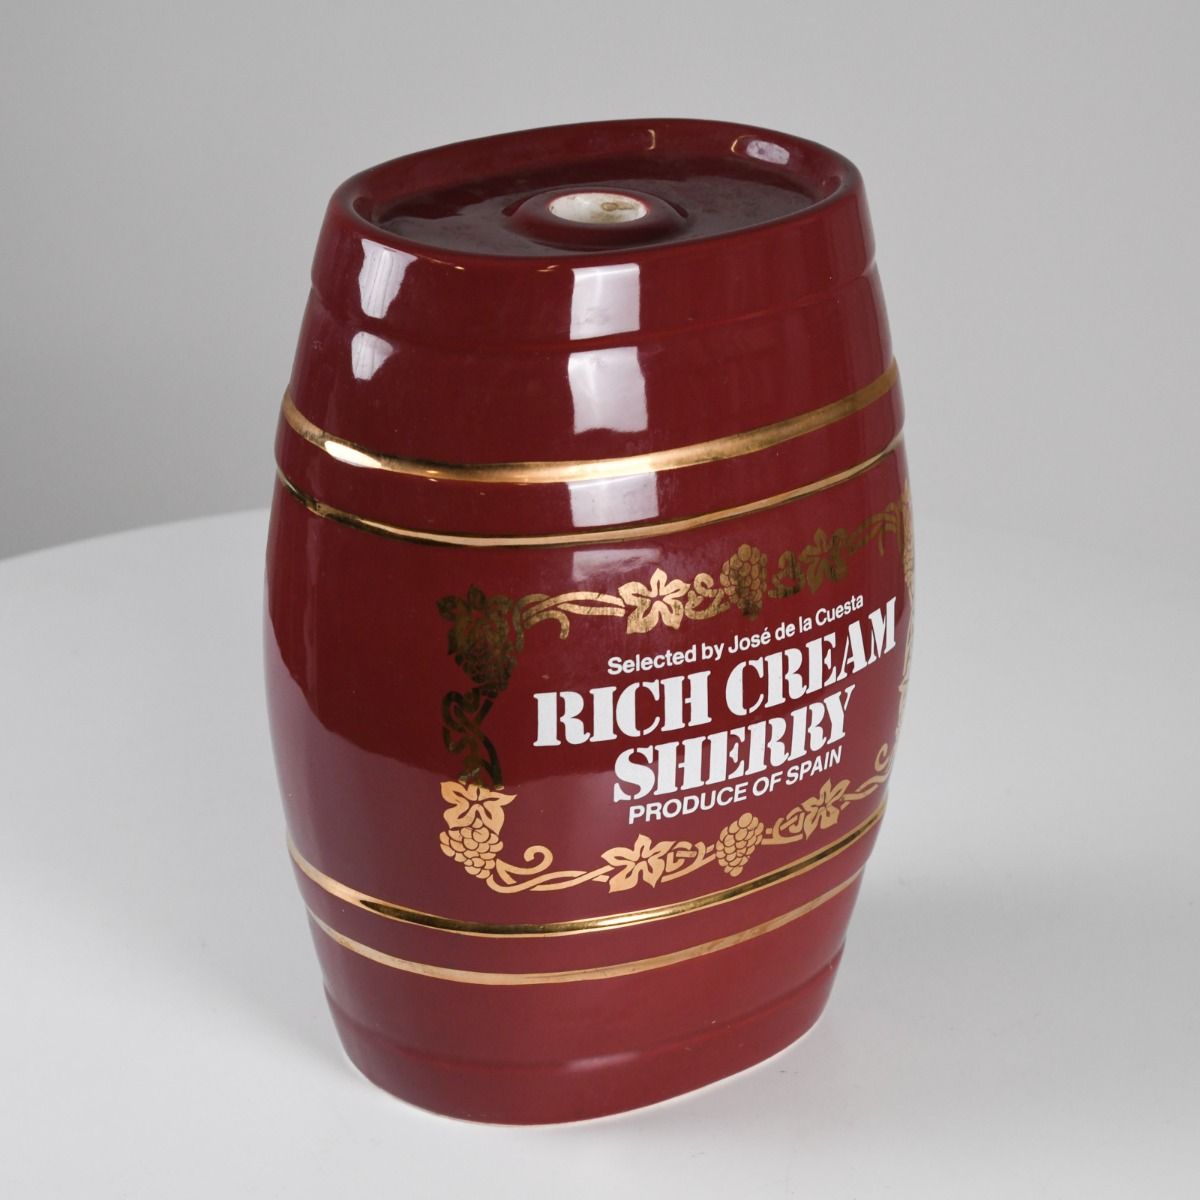 Vintage Royal Norfolk Jose de la Cuesta Rich Cream Sherry Barrel